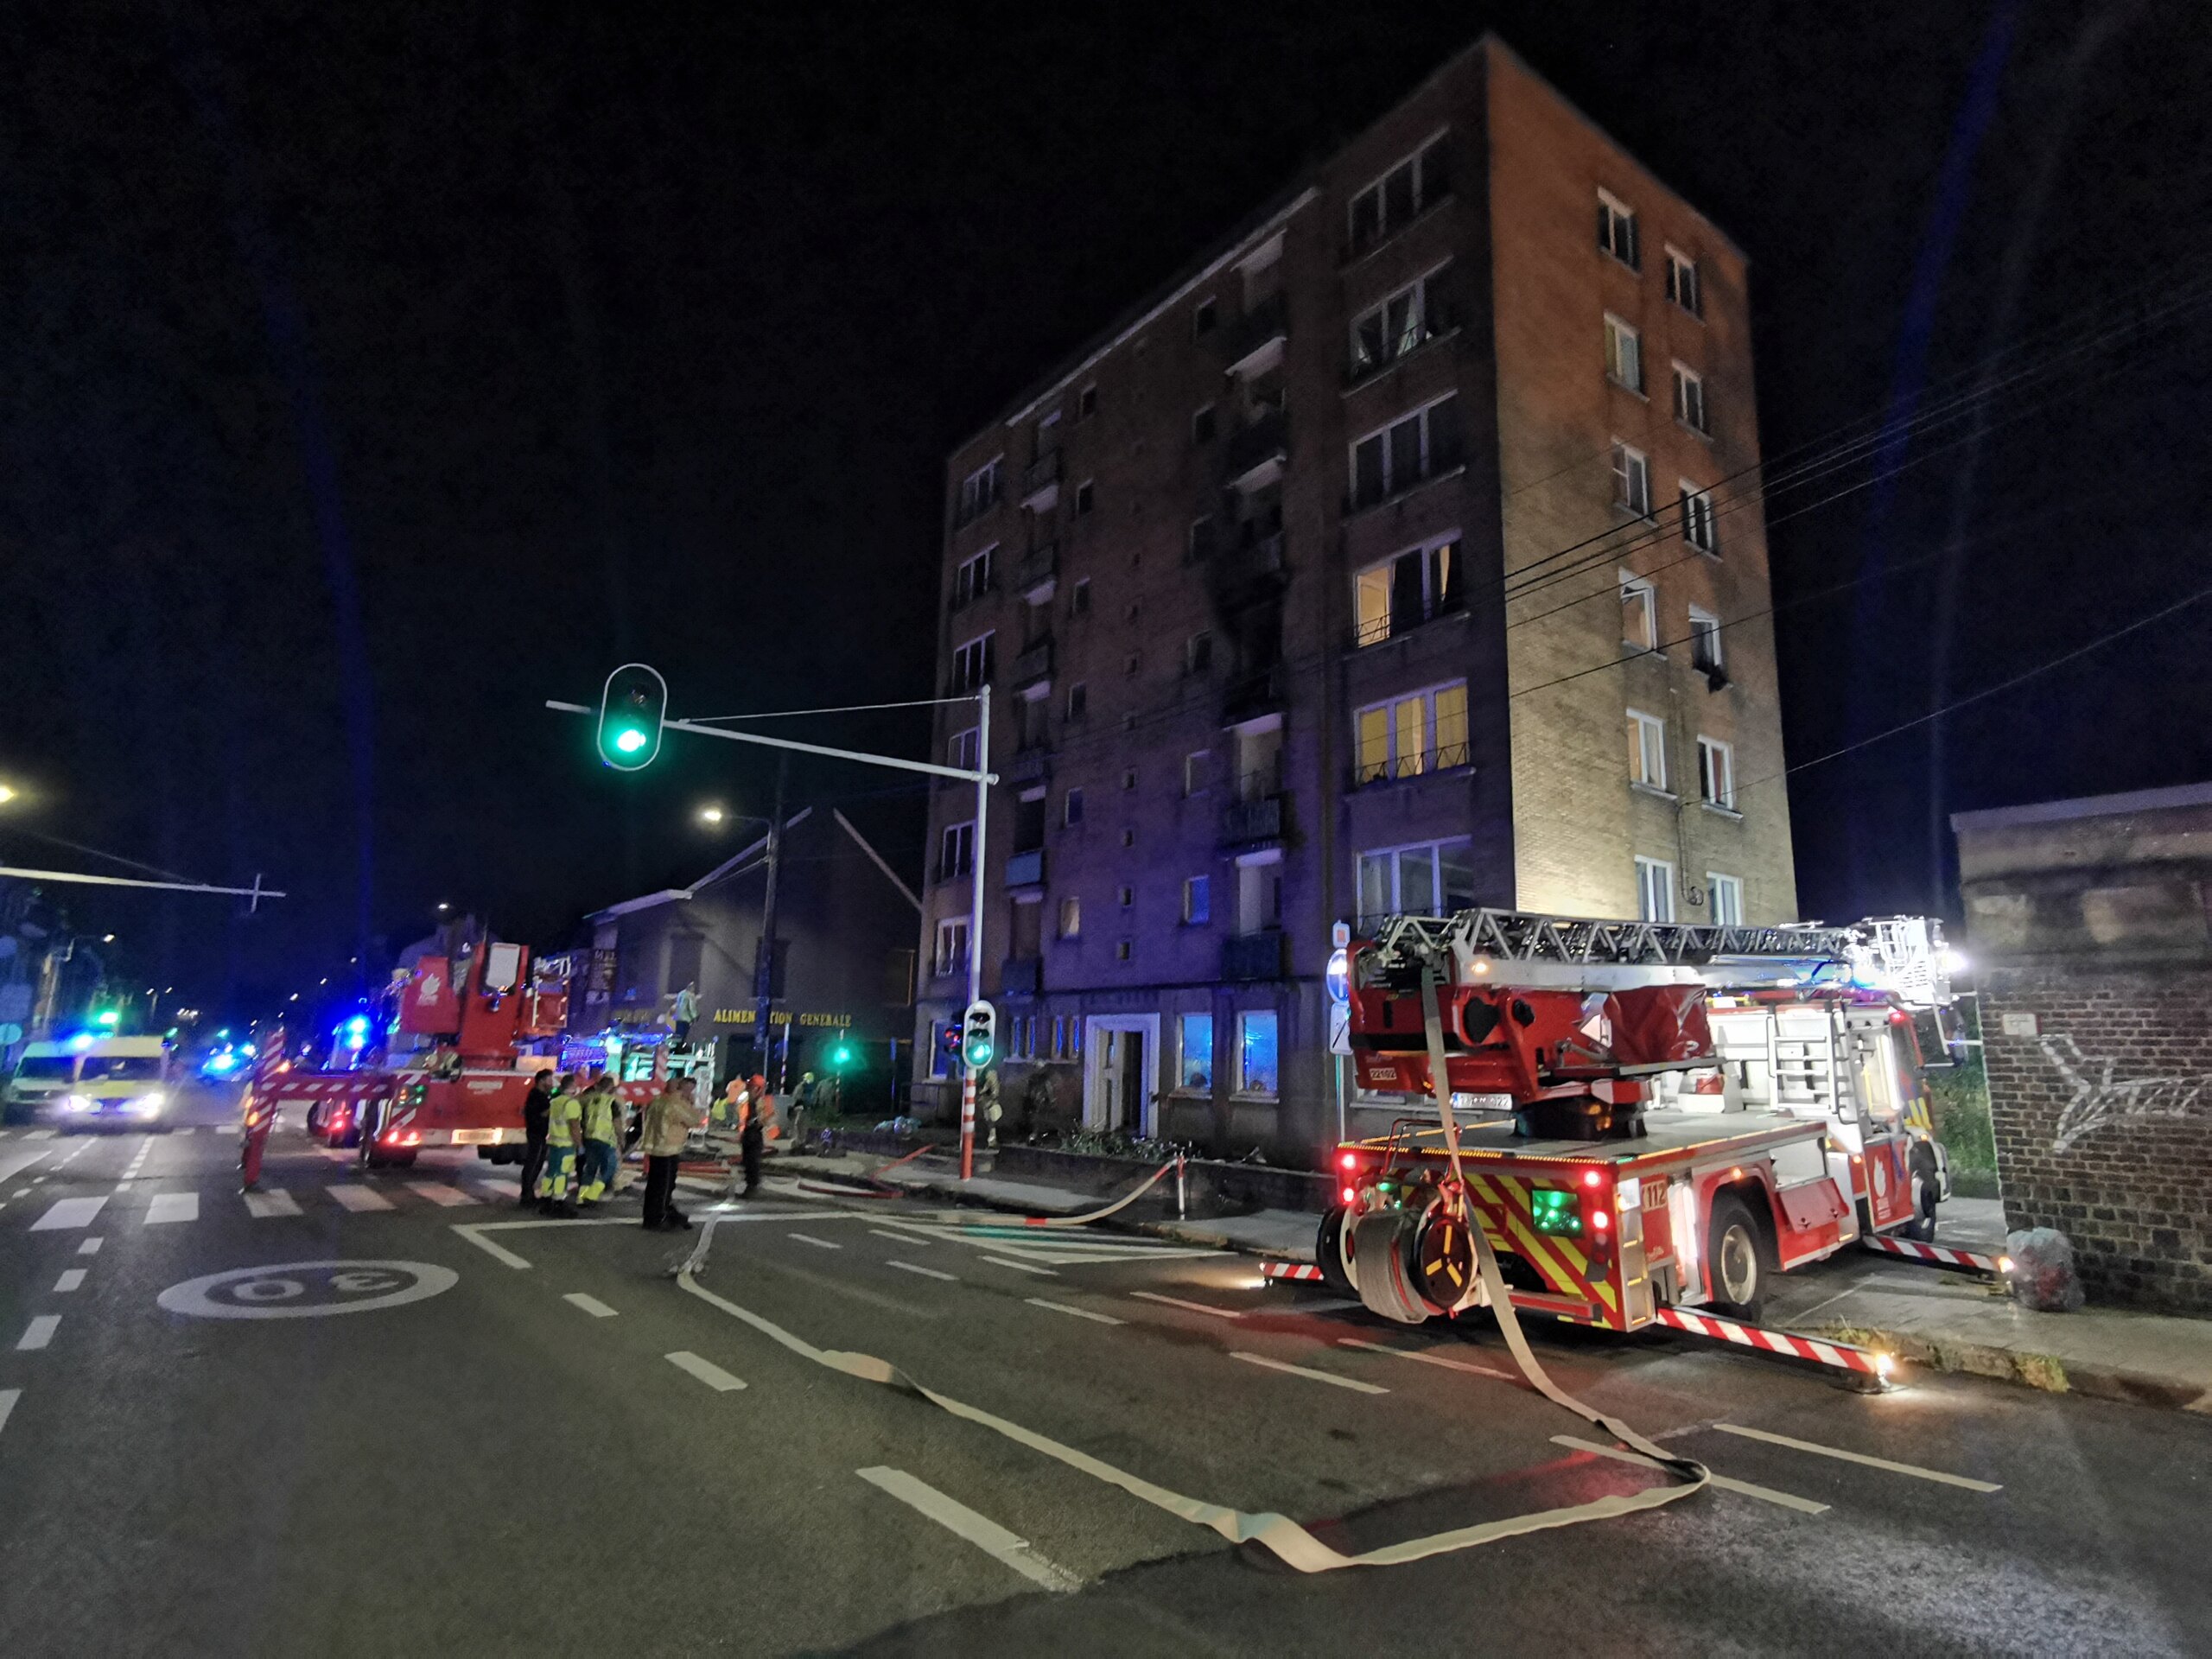 Incendie au 3e étage d'un building de Marchienne (7-09-2021 + photos) Img_2547